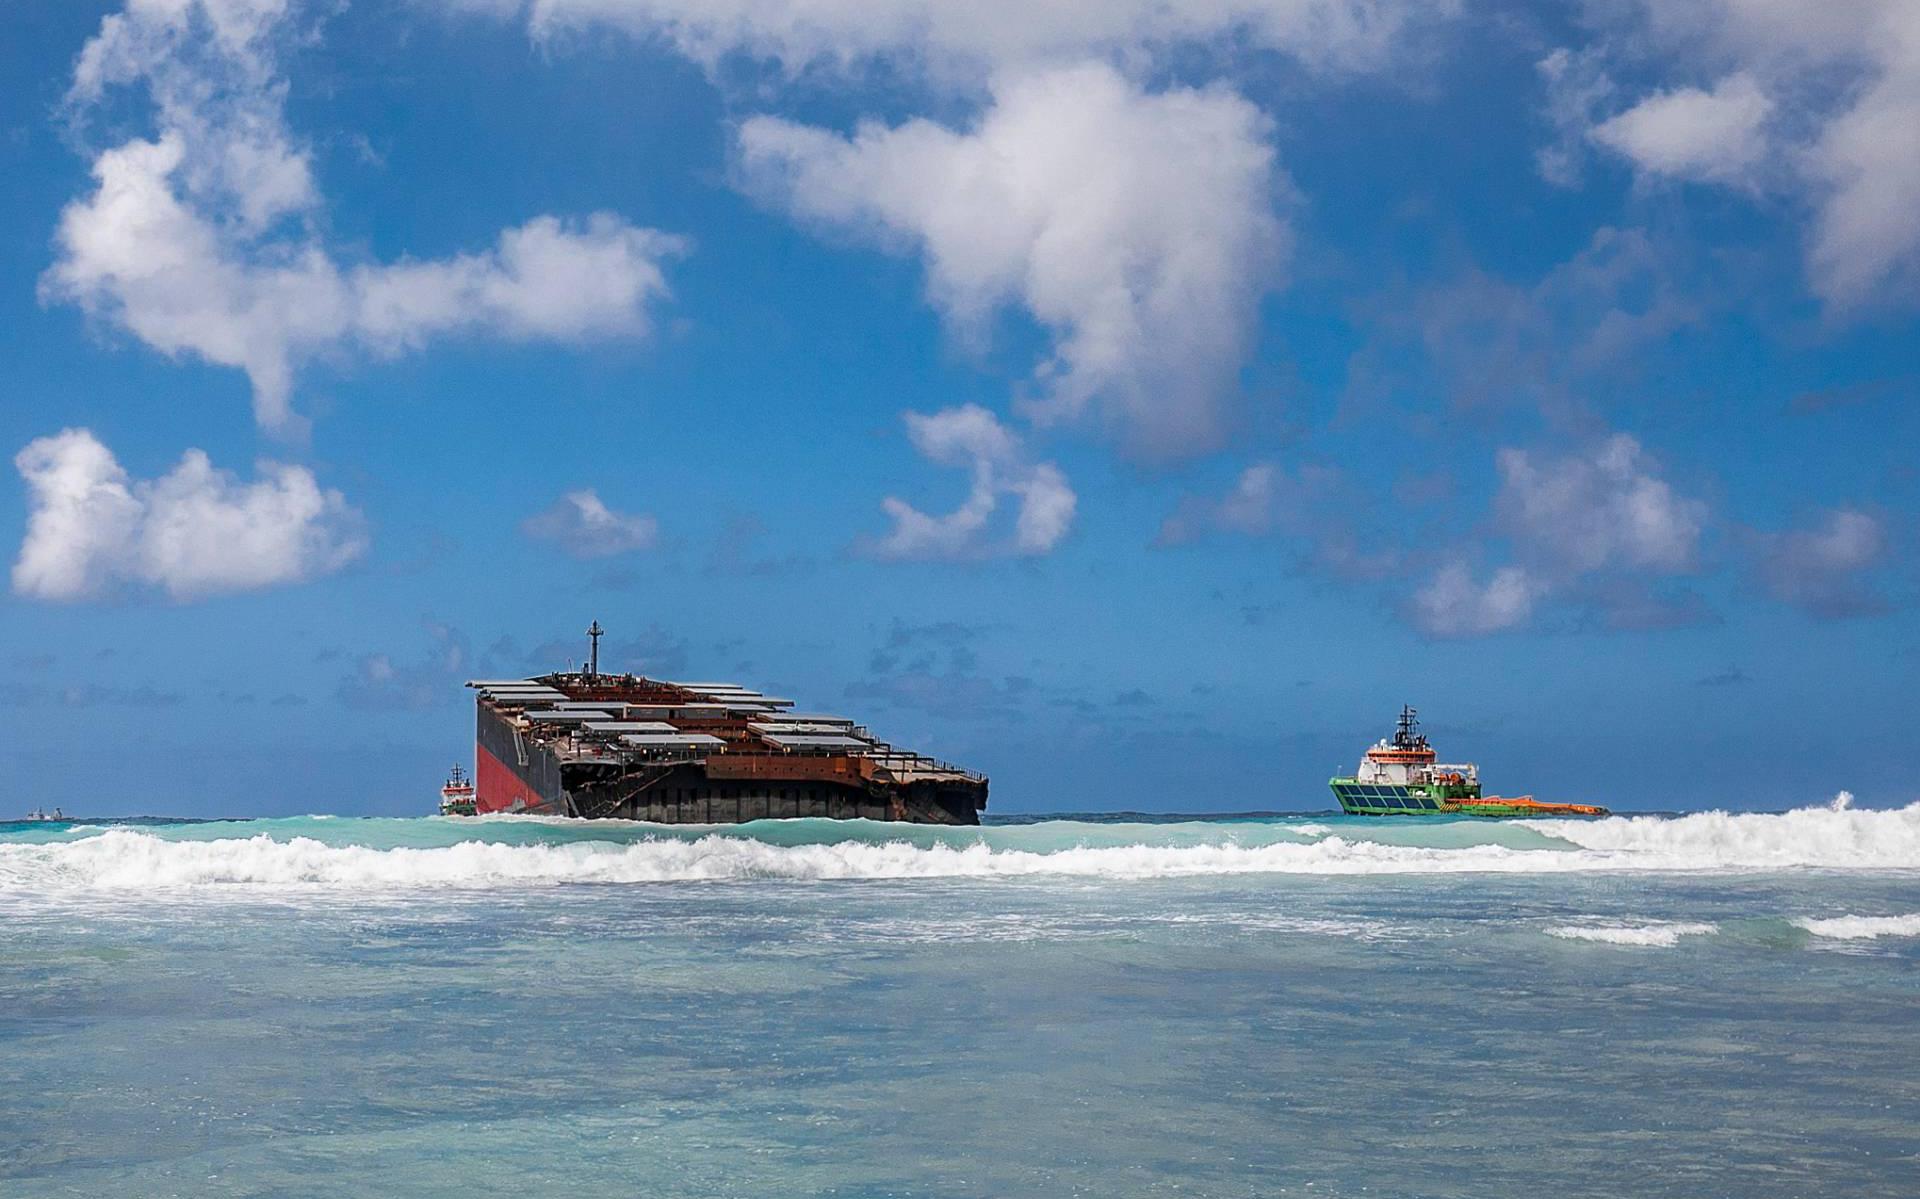 Mauritius arresteert kapitein van op rif gestrand schip